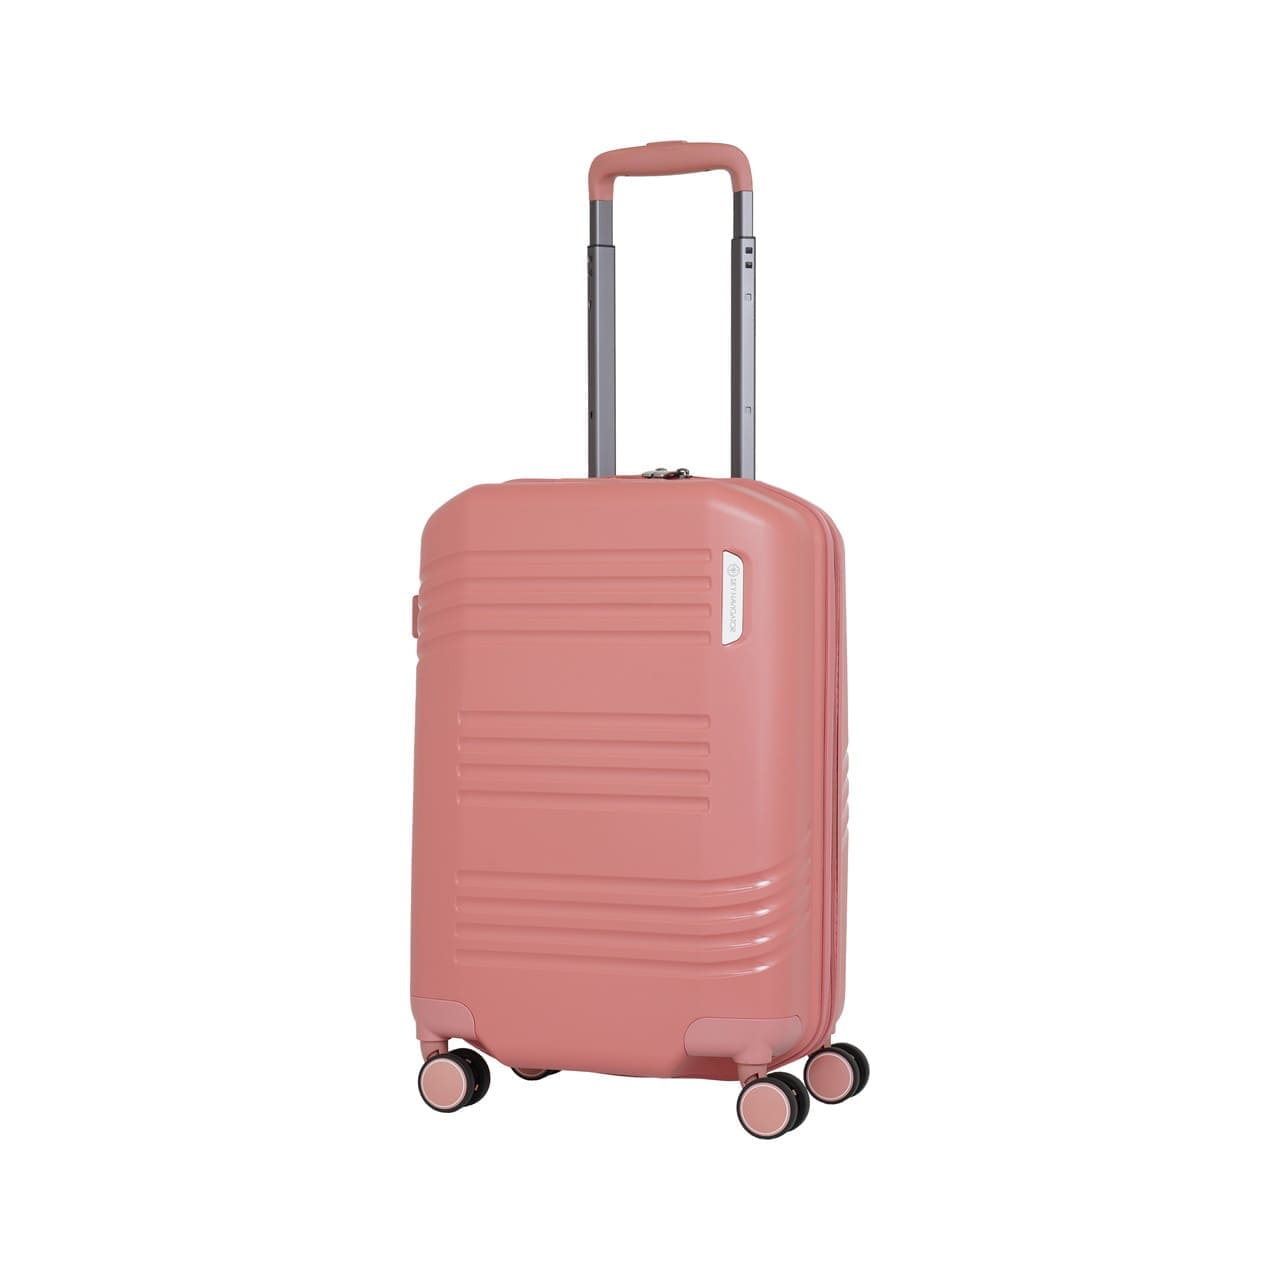 SKYNAVIGATORのスーツケースSK-0872-50のピンクの正面振り画像